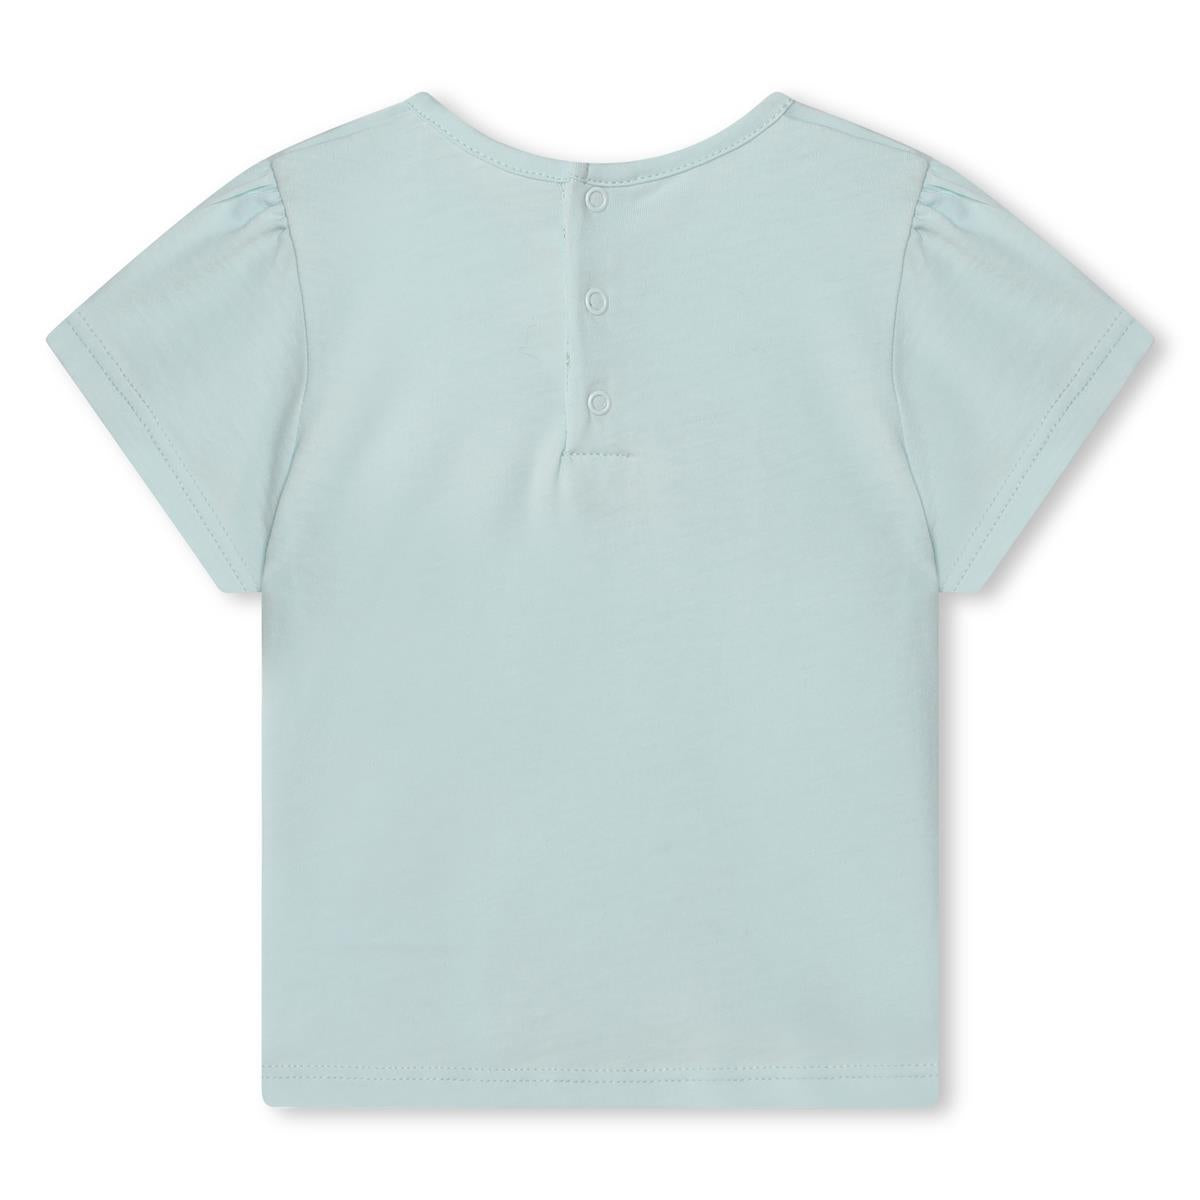 Girls Light Blue Cotton T-Shirt